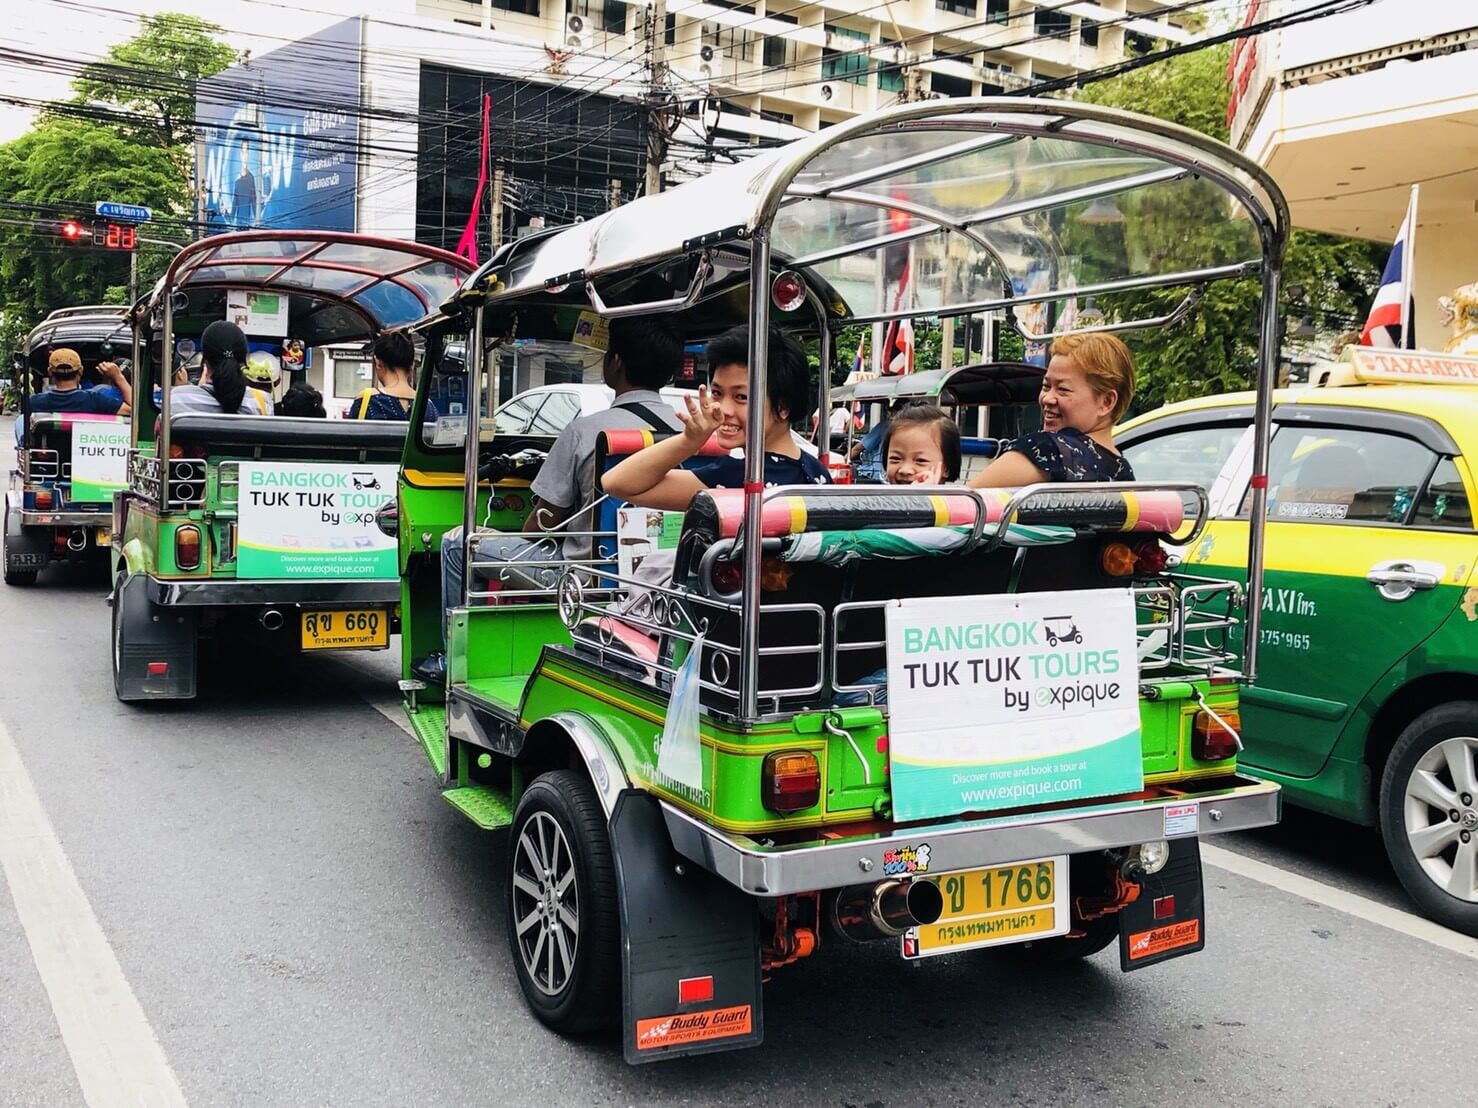 Riding tuk tuks around Bangkok With Expique